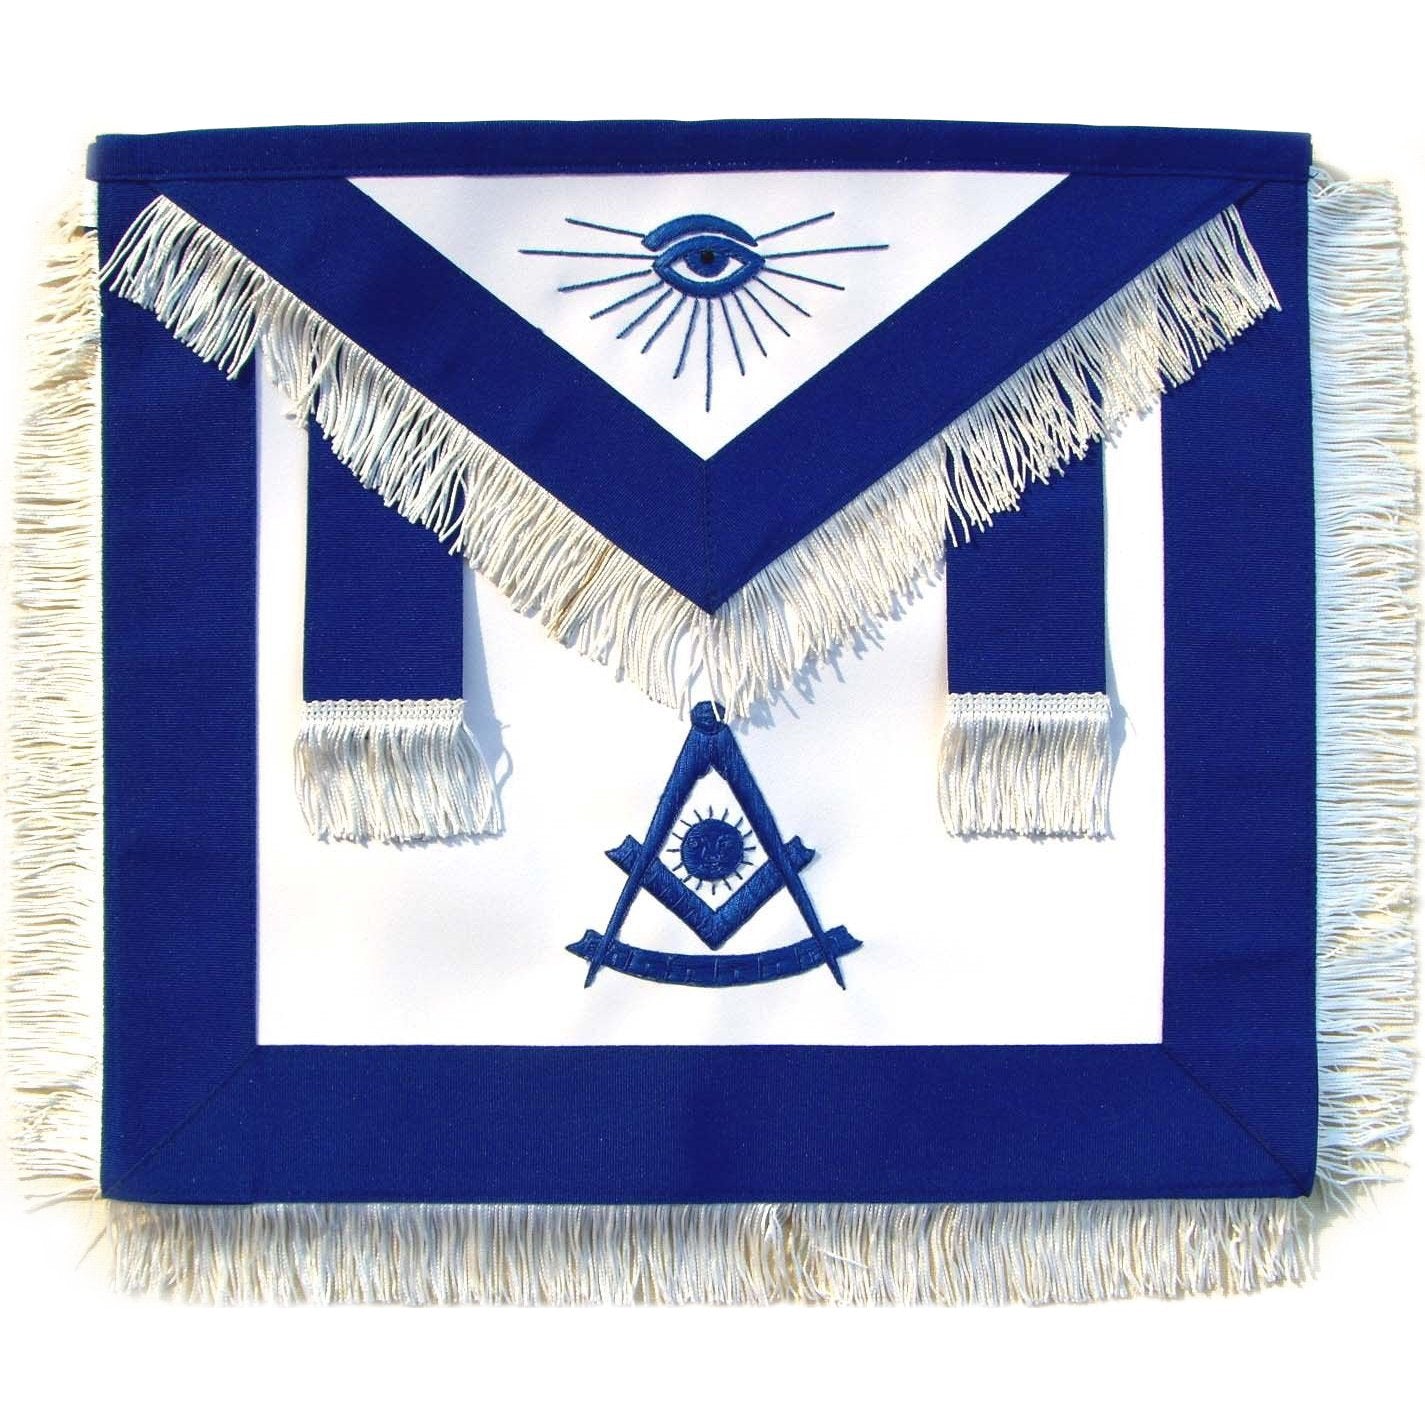 Past Master Blue Lodge Apron - Royal Blue with Blue Hand Embroidery & White Fringe - Bricks Masons